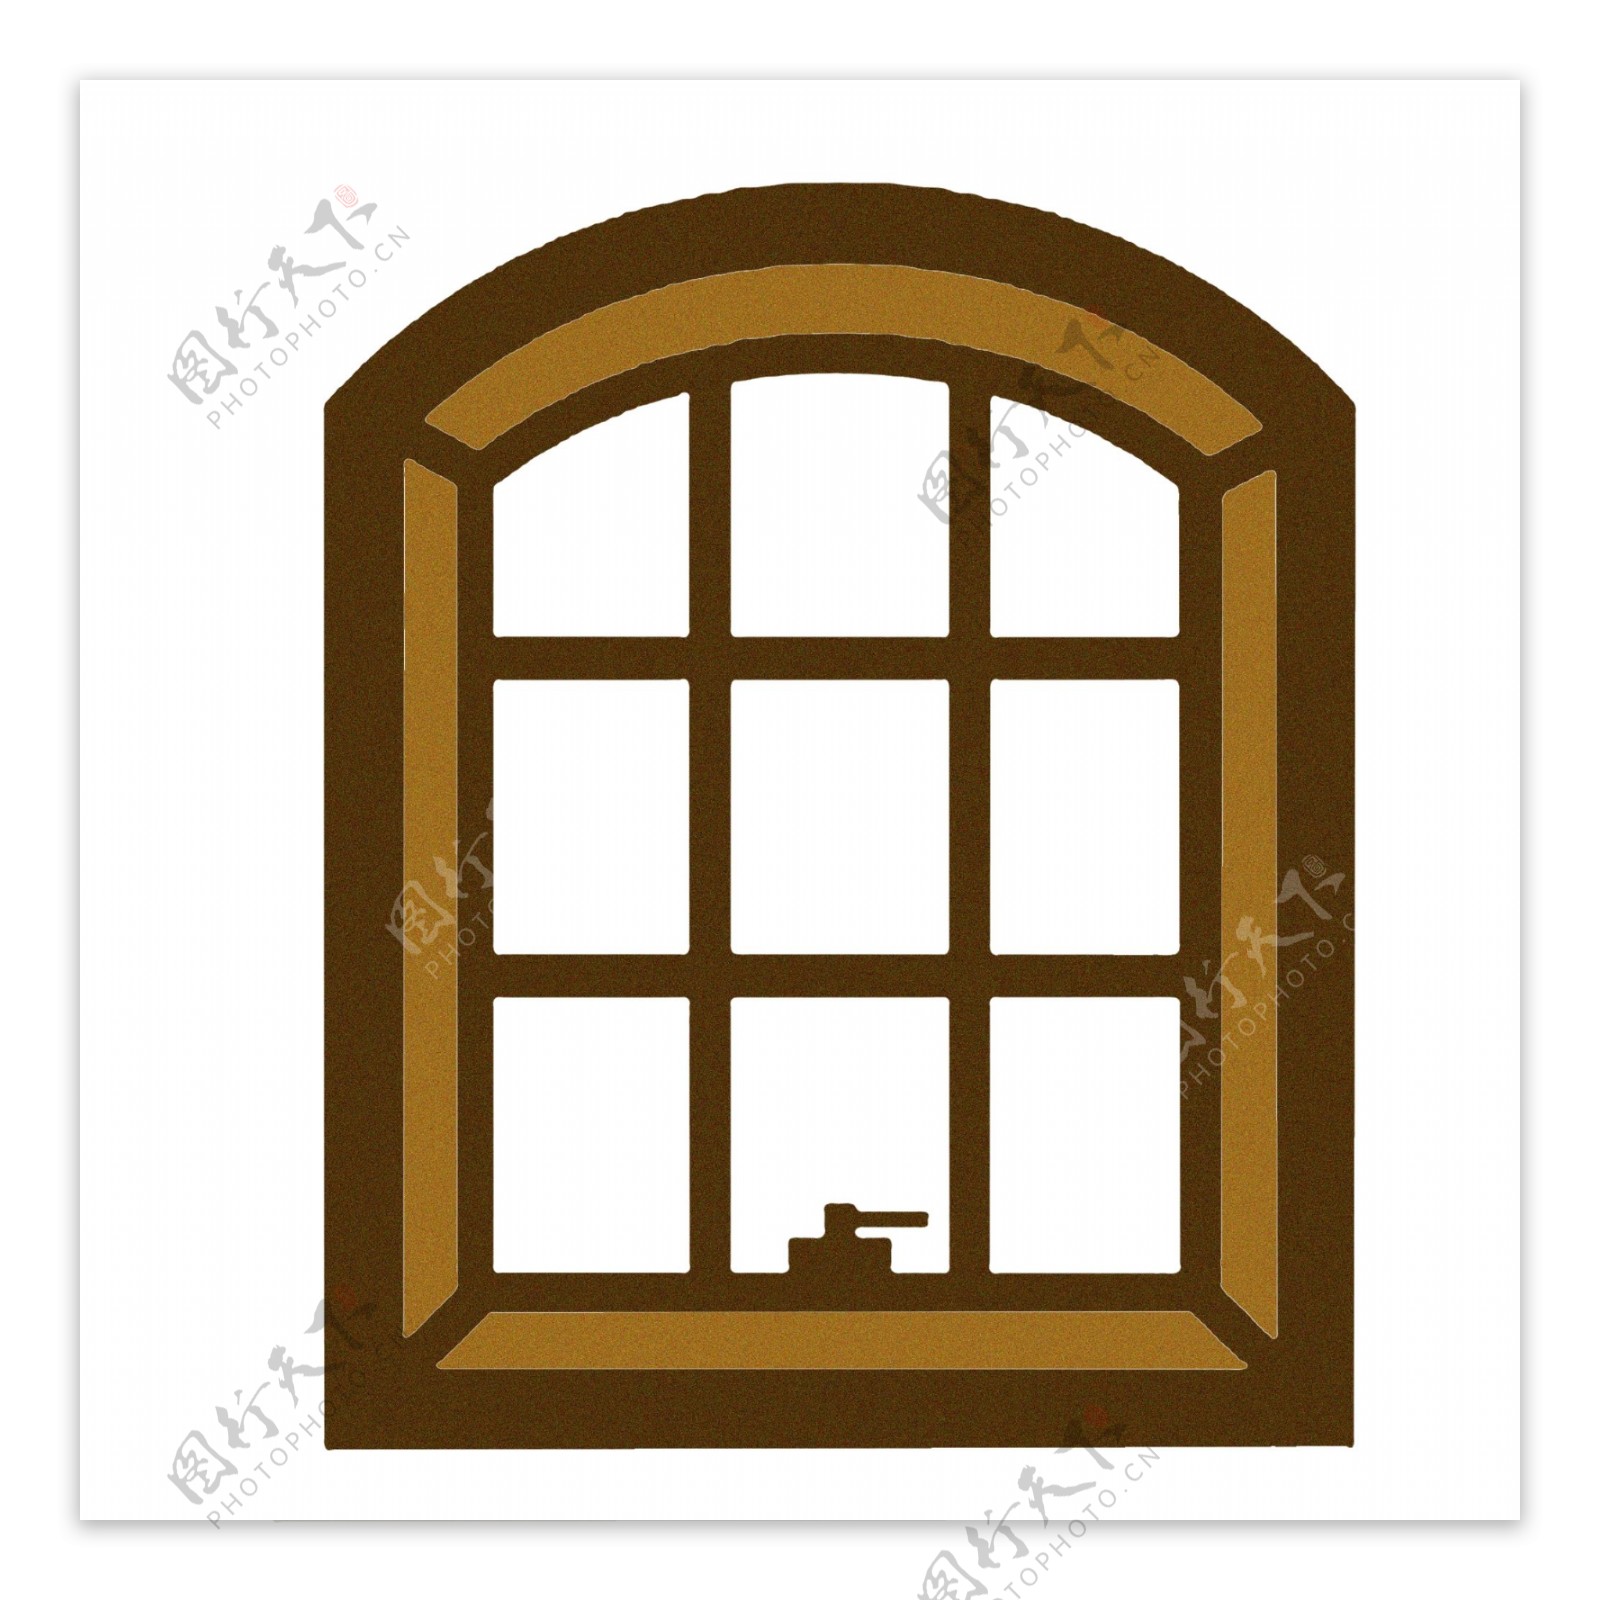 窗子棕色装饰图案